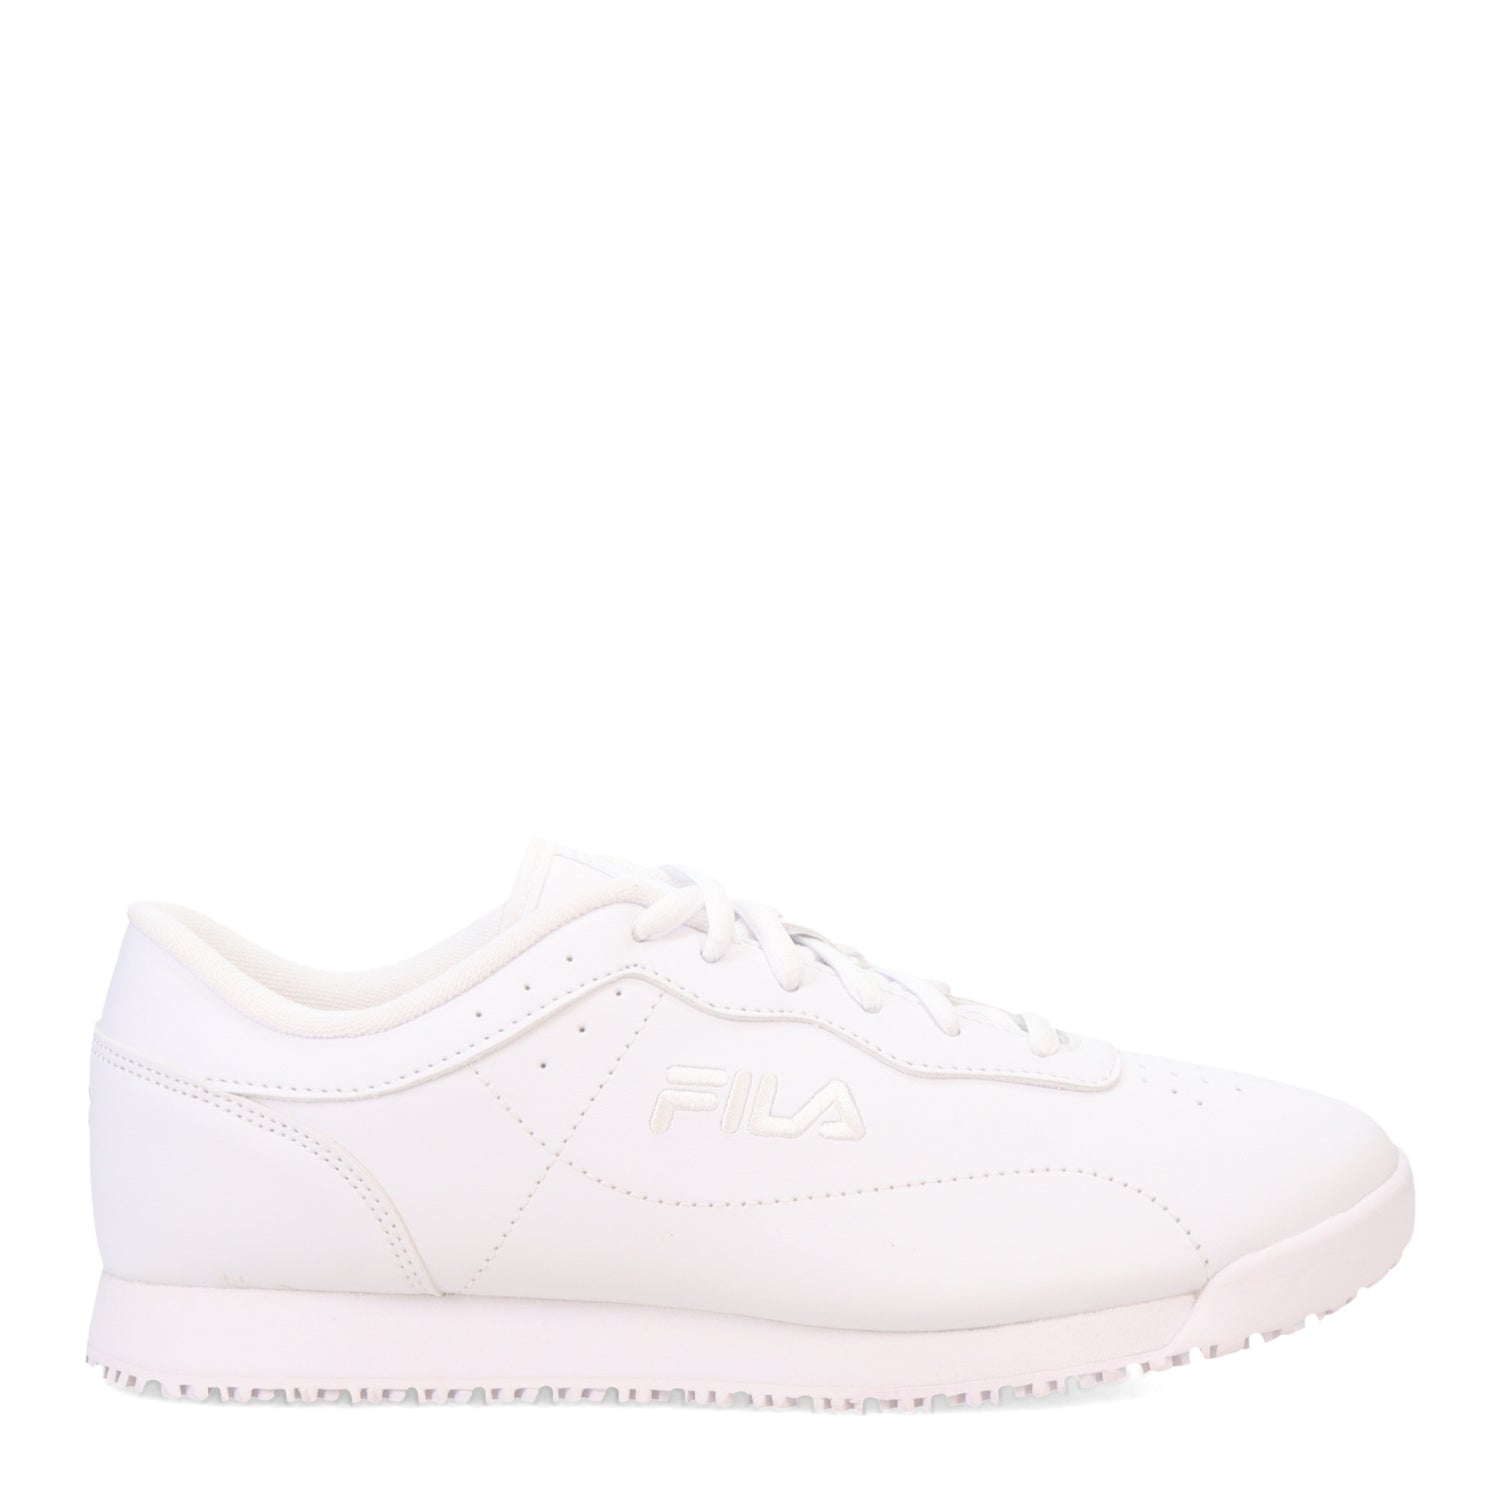 Peltz Shoes  Women's Fila Memory Viable SR Work Sneaker - Wide Width White 5SLW5000-100